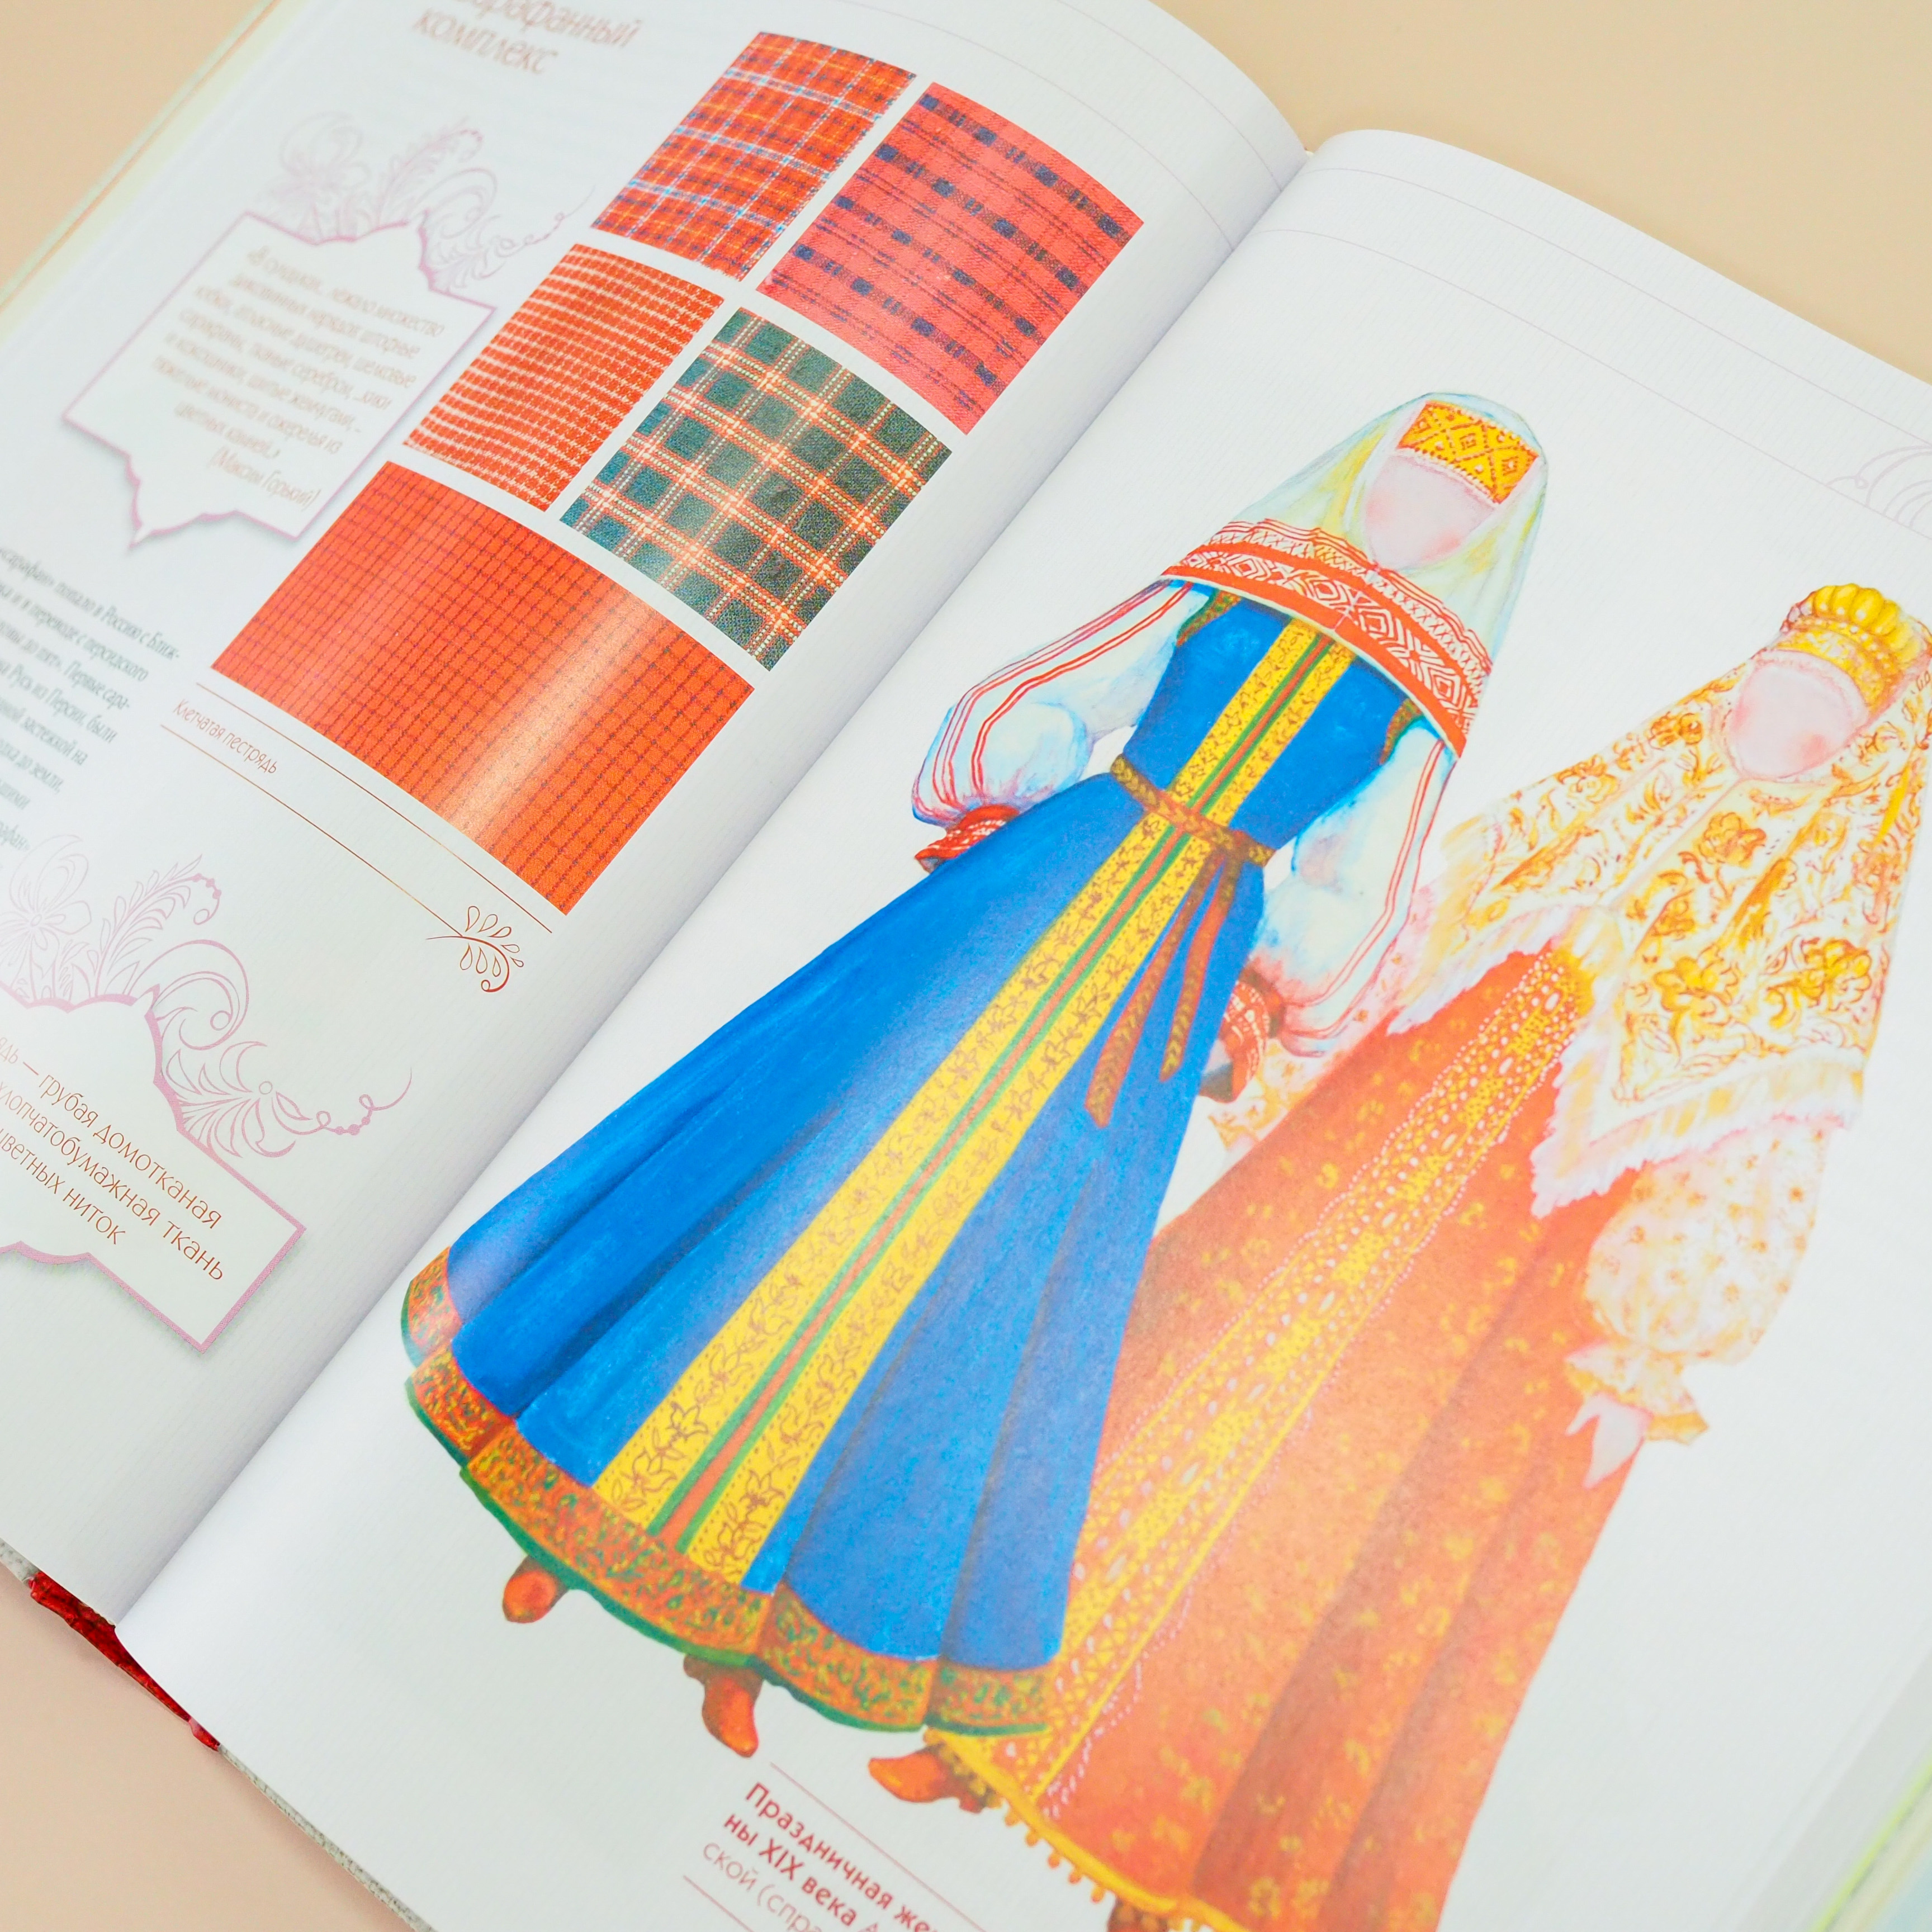 Art Book Iskusstvo ロシアの民族衣装大全 可愛らしい人形とイラストでロシアの伝統的な民族衣装を紹介 ココシニク サラファン ルバシカといった各アイテムを簡単な裁断図を載せながら詳細に解説しています イラストや創作などの資料としても